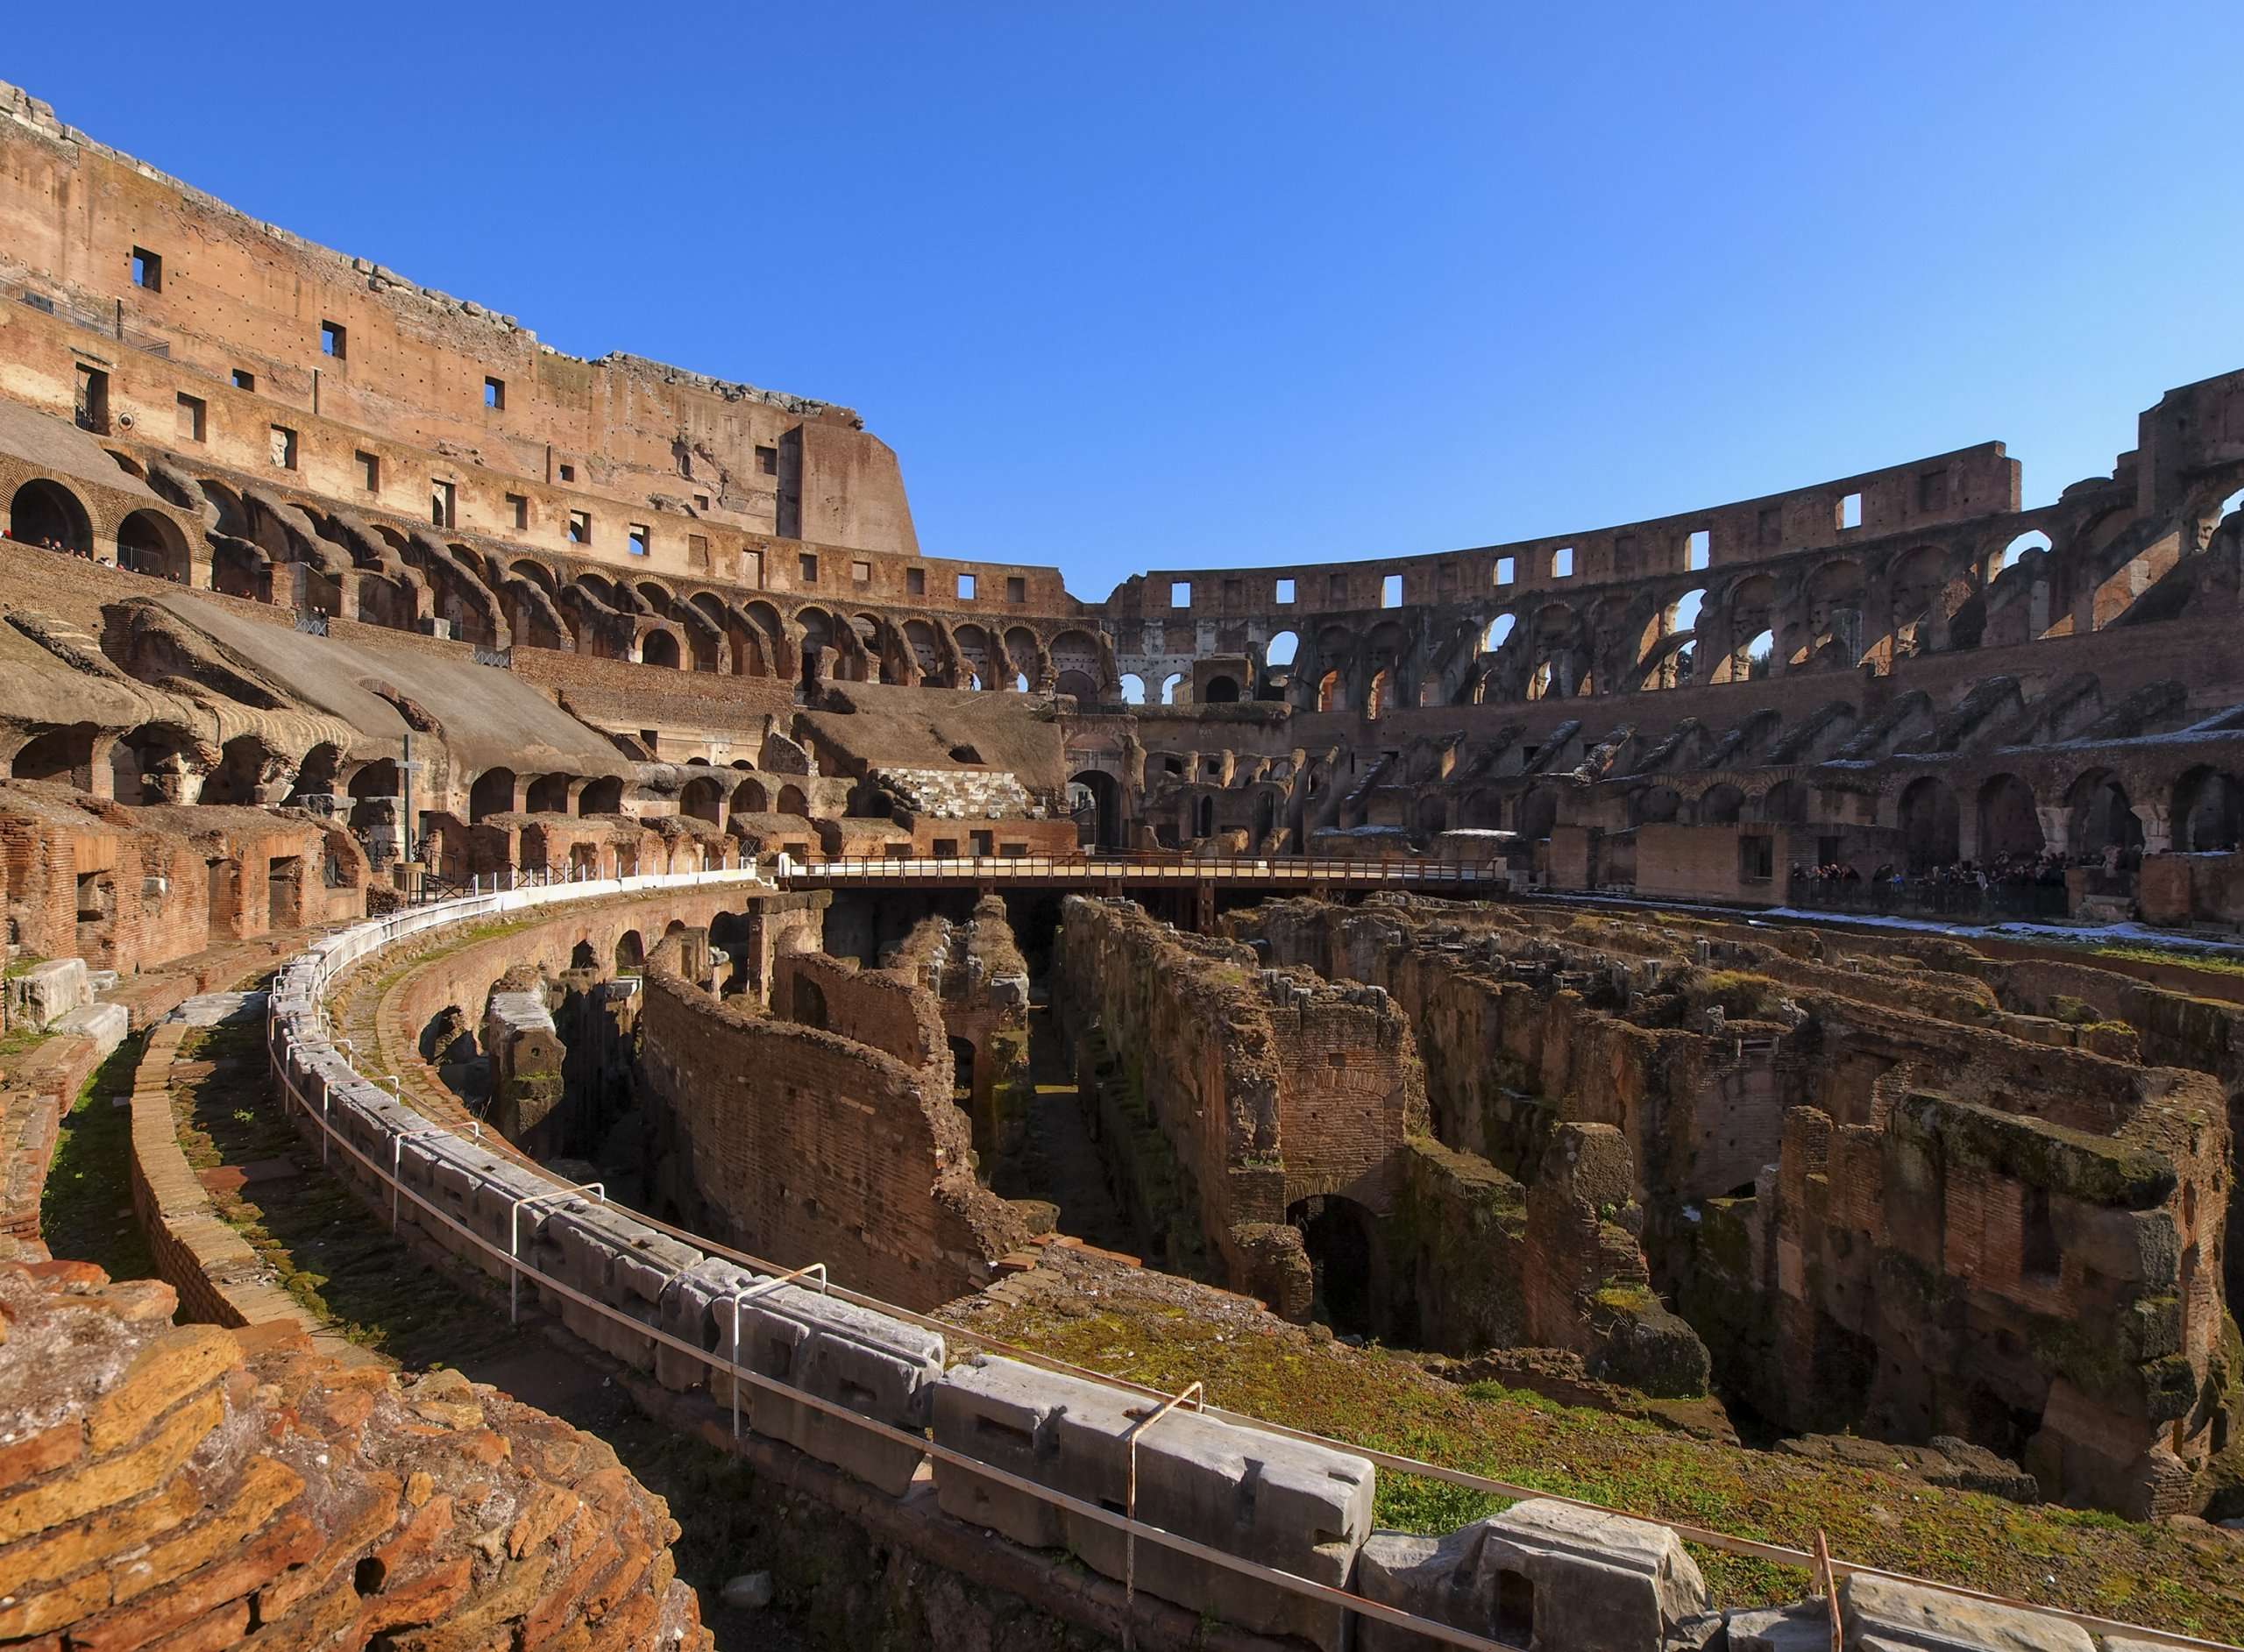 colosseum in rome 2021 08 29 12 19 41 utc scaled